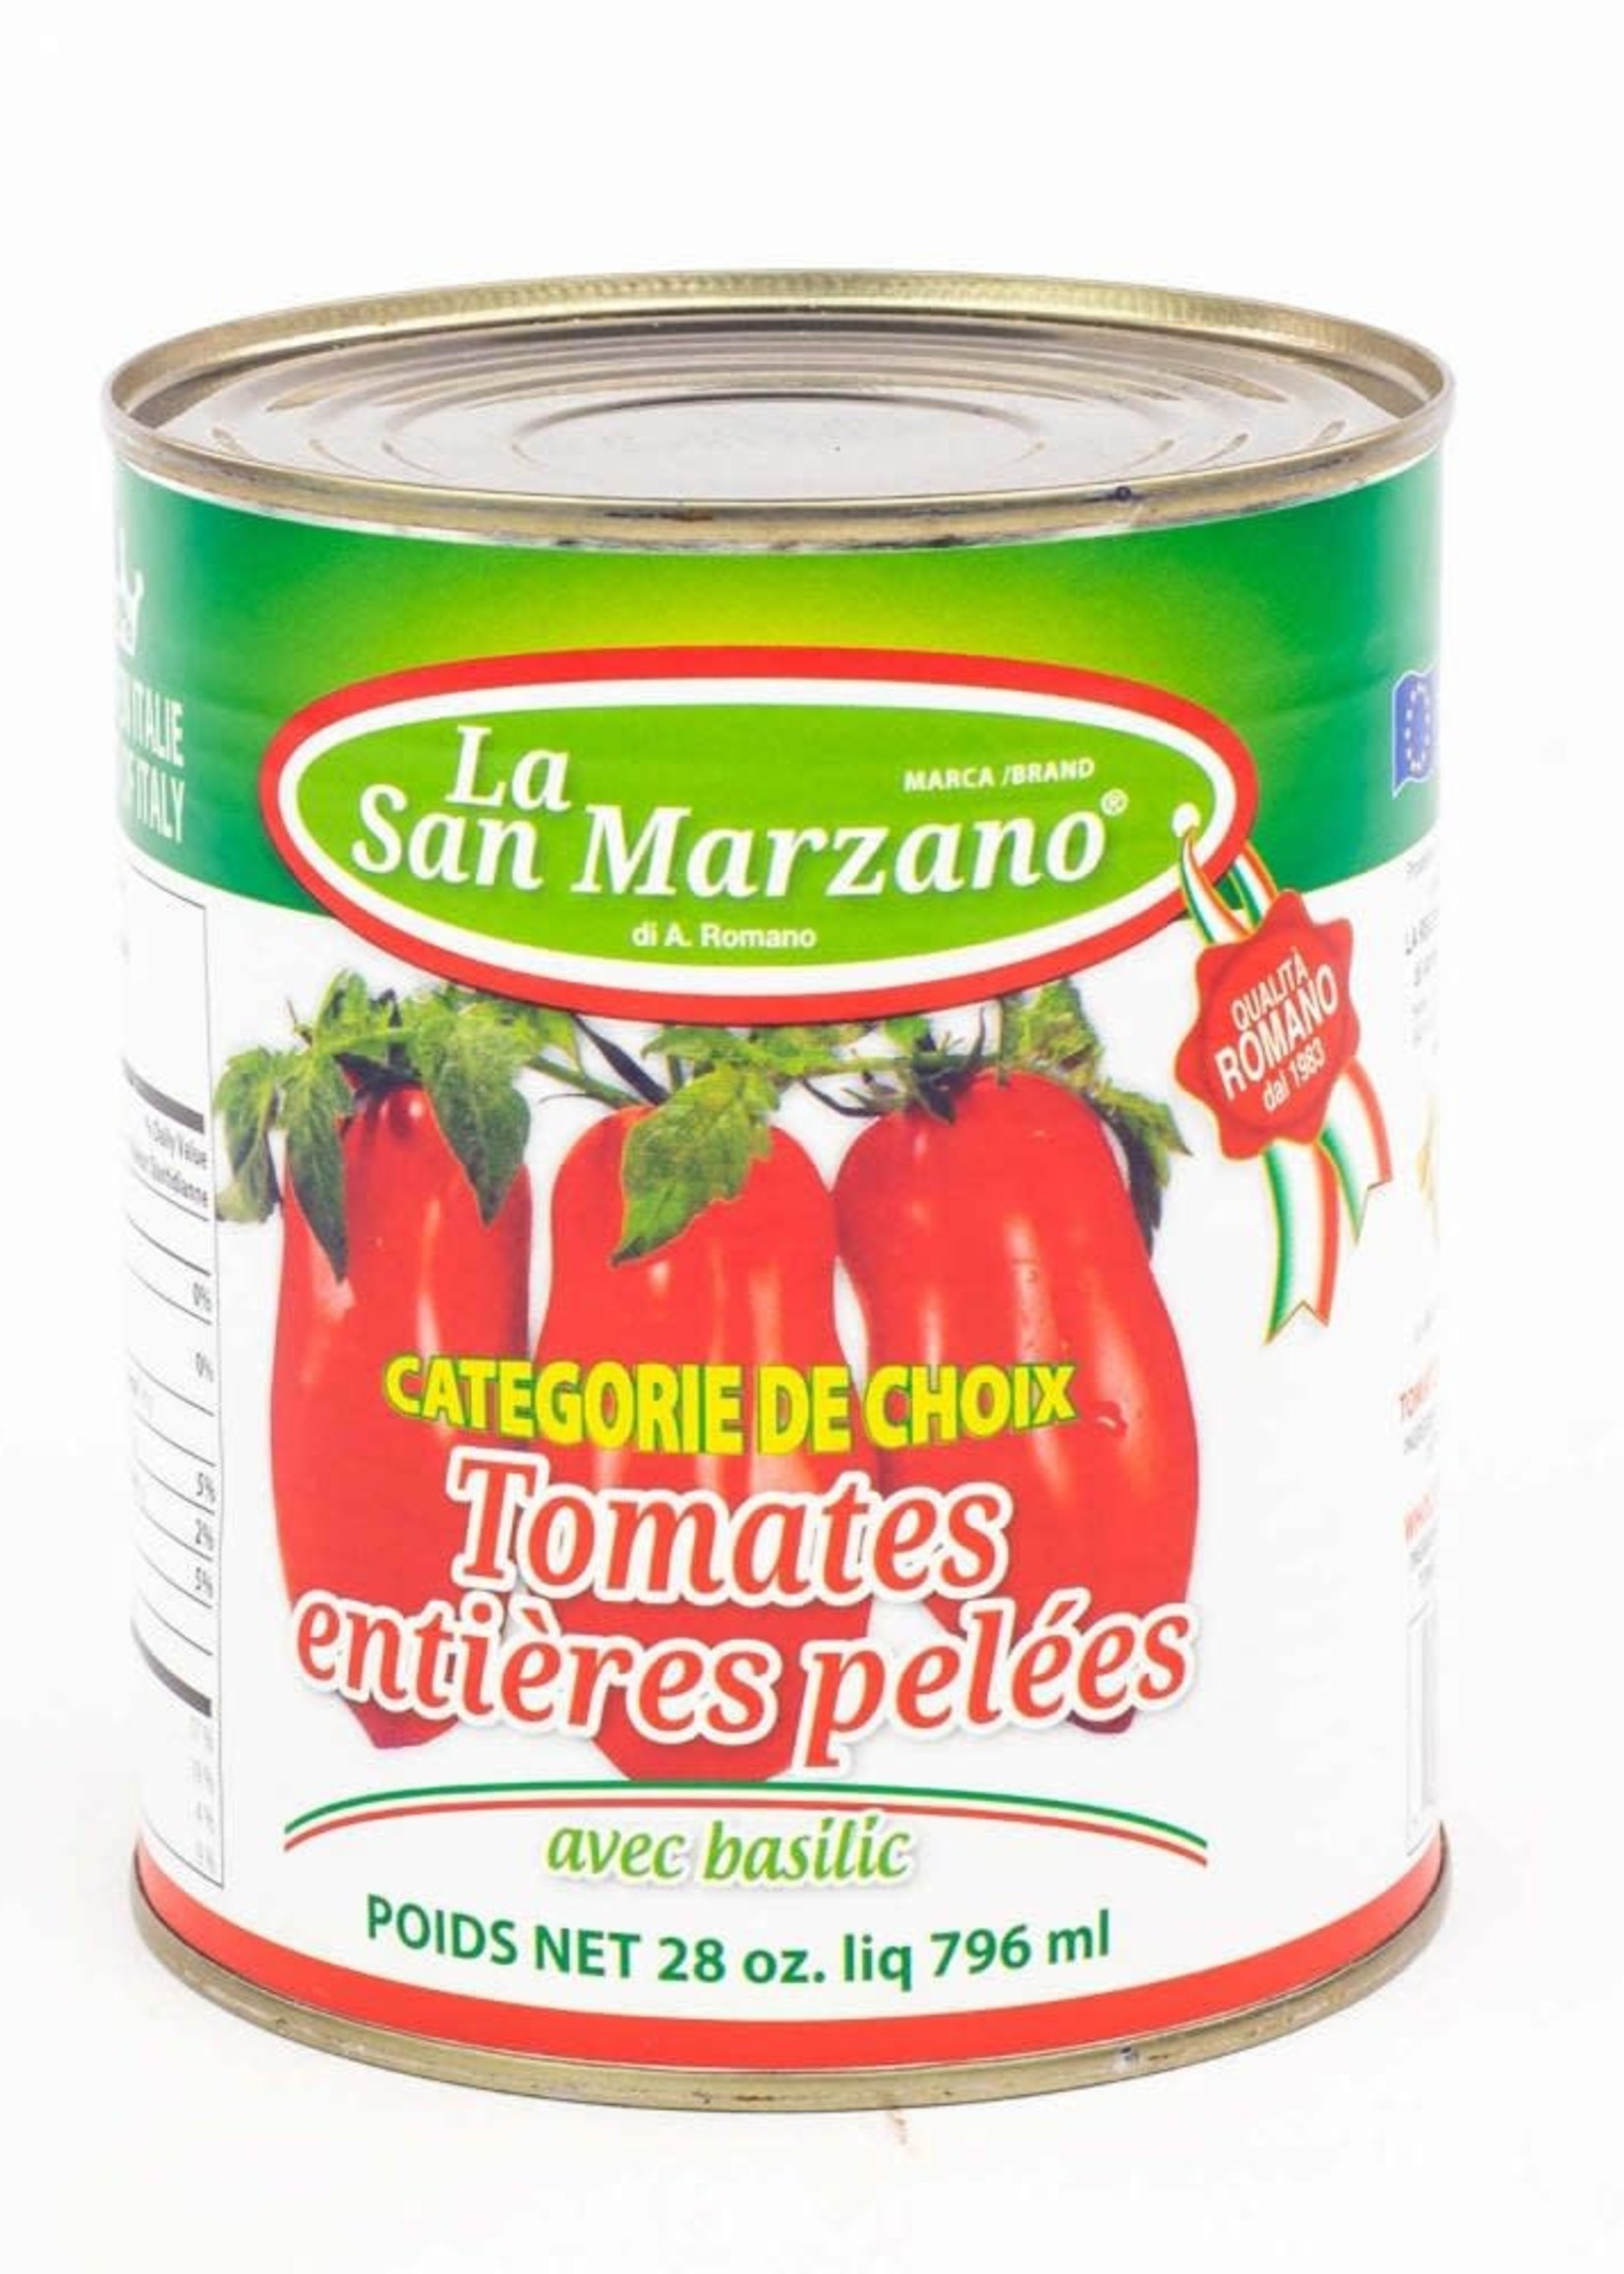 Tomates entières pelées 796ml - La San Marzano